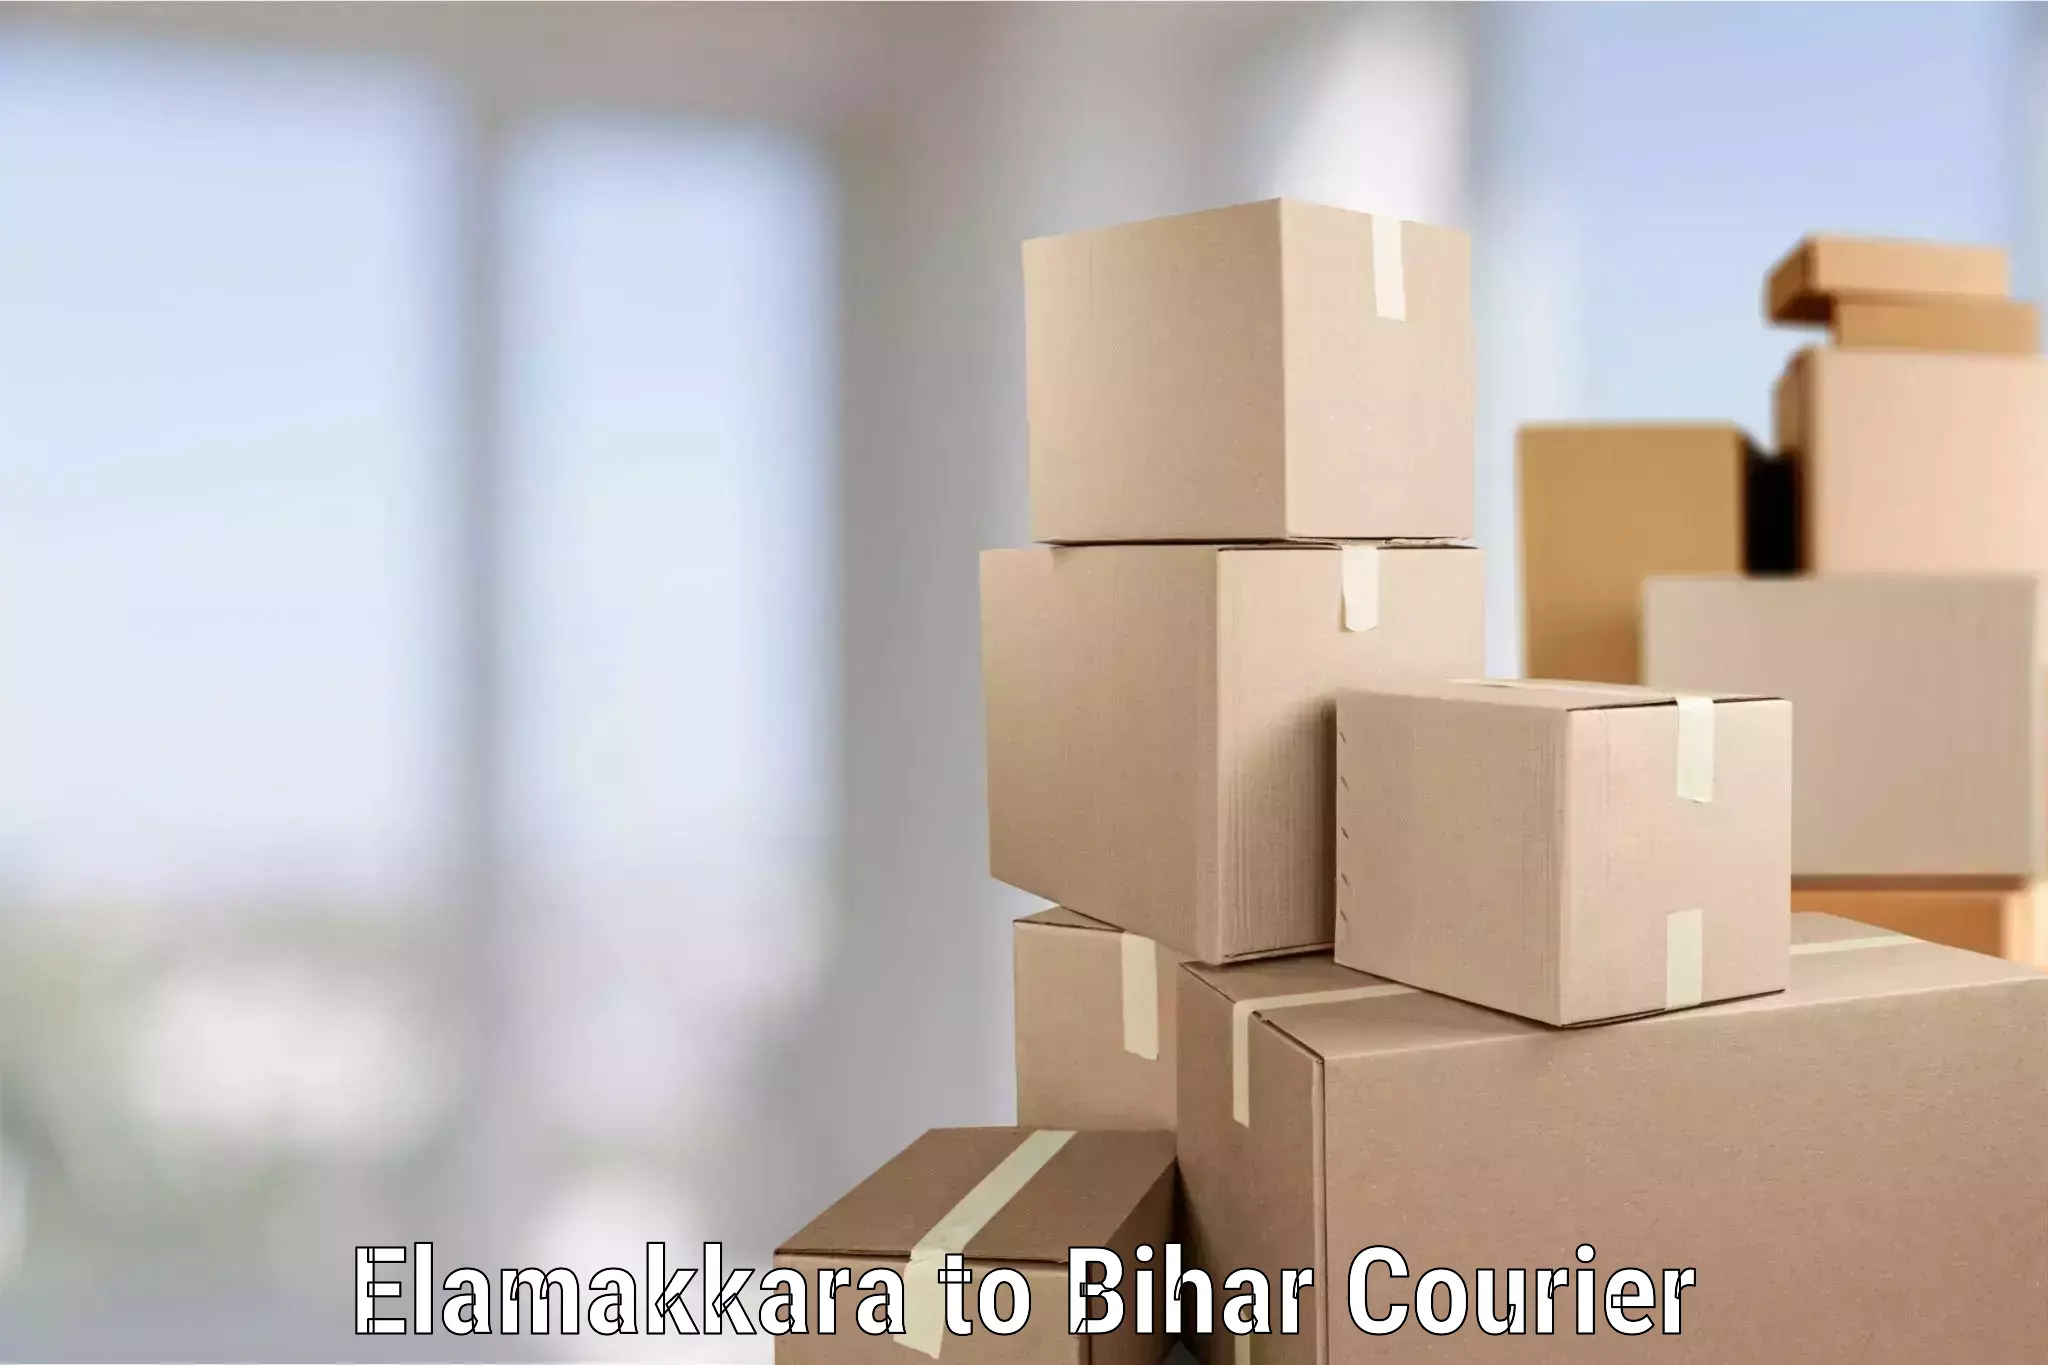 Household goods transport service Elamakkara to Alamnagar